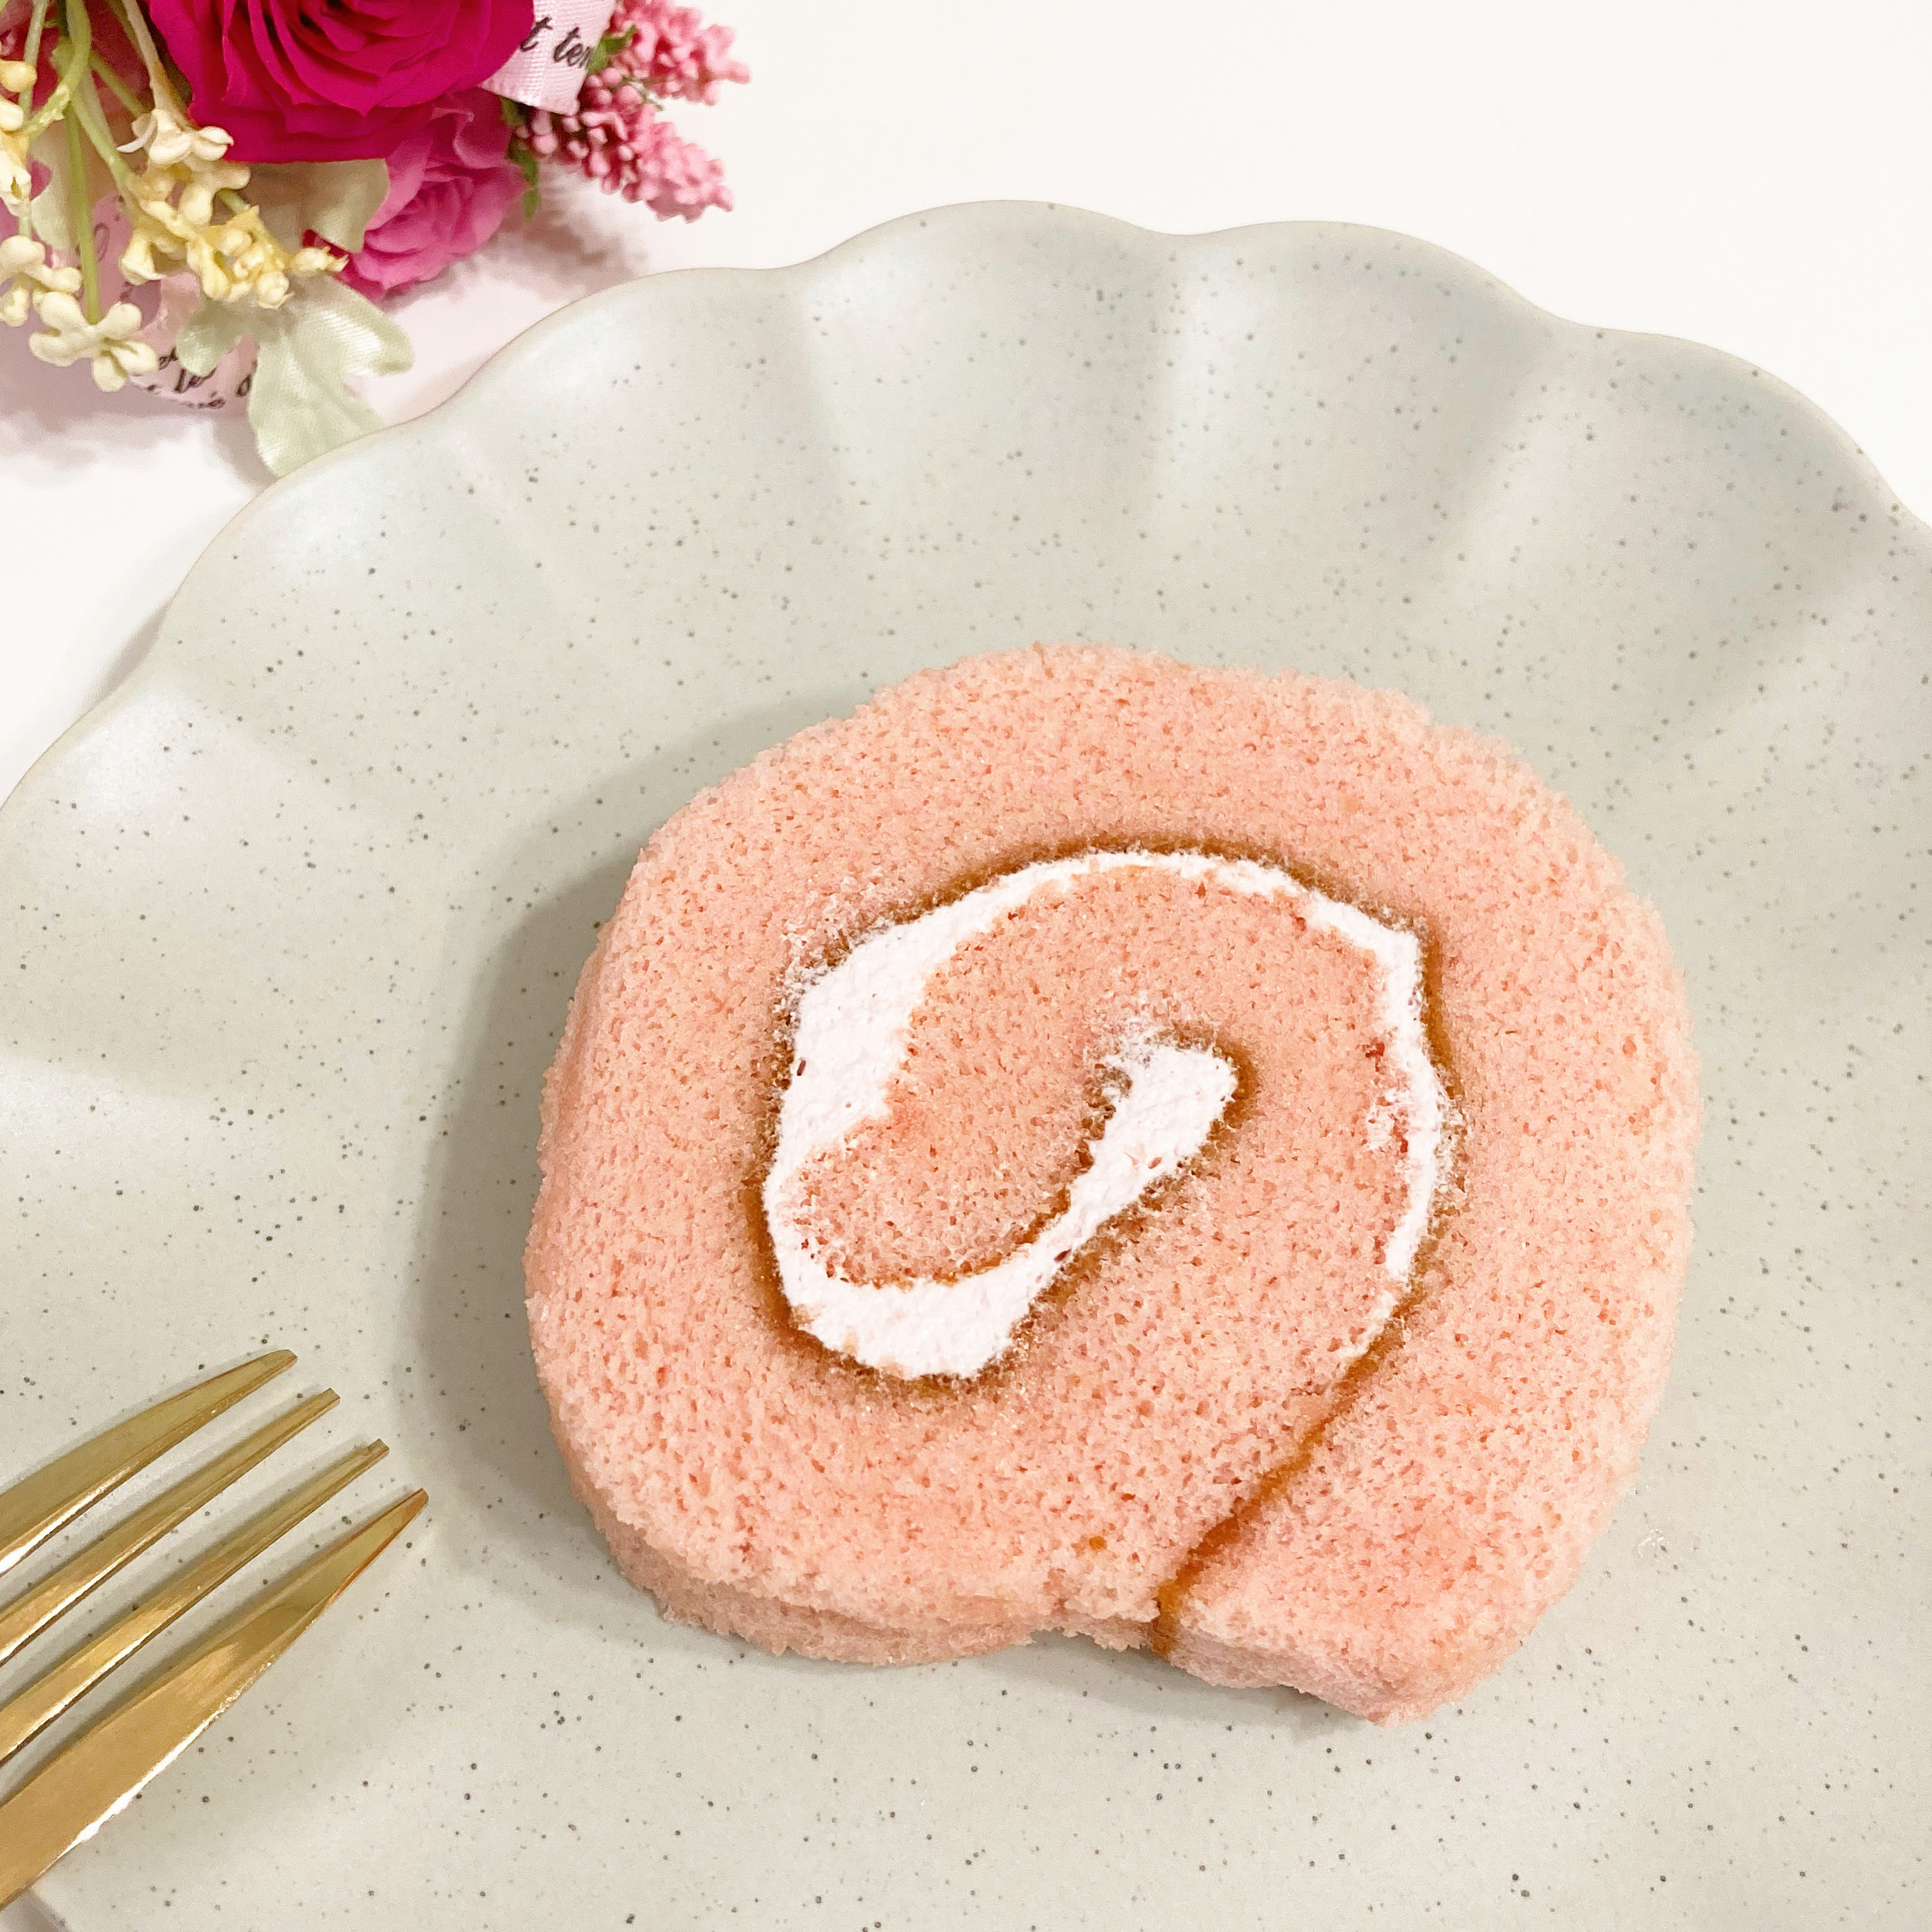 無印良品の期間限定スイーツ「桜ロールケーキ」